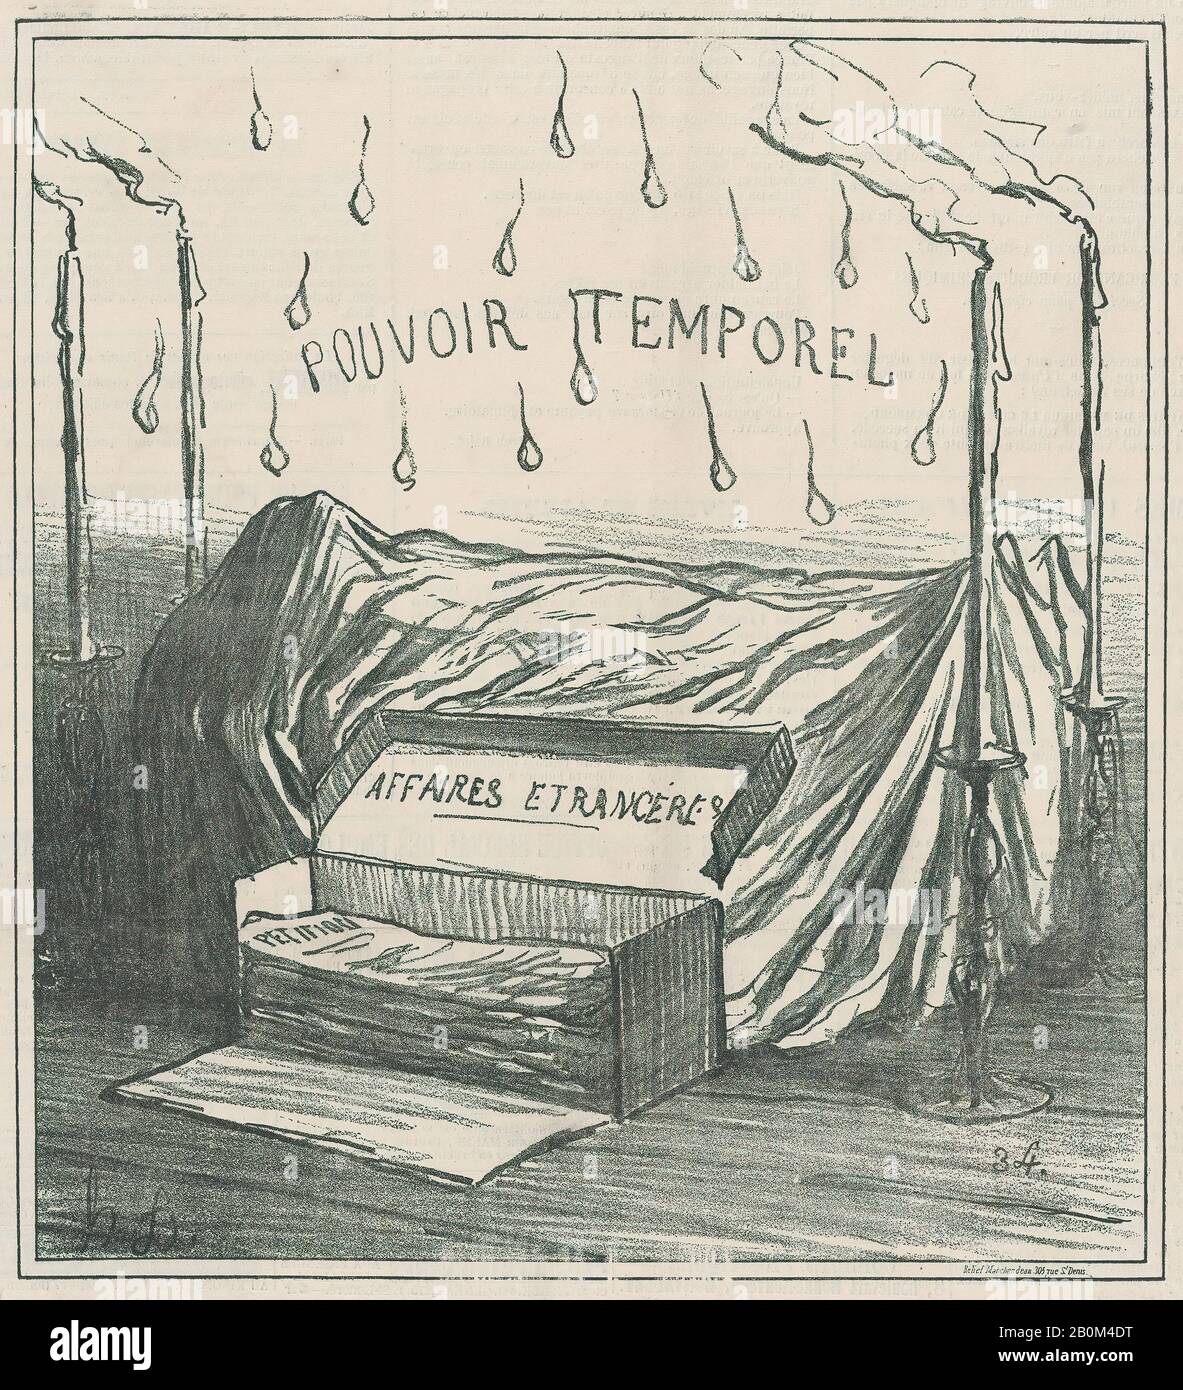 Honoré Daumier, Riposo in pace!, da 'News of the day', pubblicato in le Charivari, 7 agosto 1871, 'News of the day' (Actualités), Honoré Daumier (francese, Marsiglia 1808–1879 Valmondois), 7 agosto 1871, litografo su carta da giornale; secondo stato di due (Delteil), immagine: × 5/8. (24,4 × 22,2 cm), foglio: 11 7/8 × 11 13/16 in. (30,1 × 30 cm), stampe Foto Stock